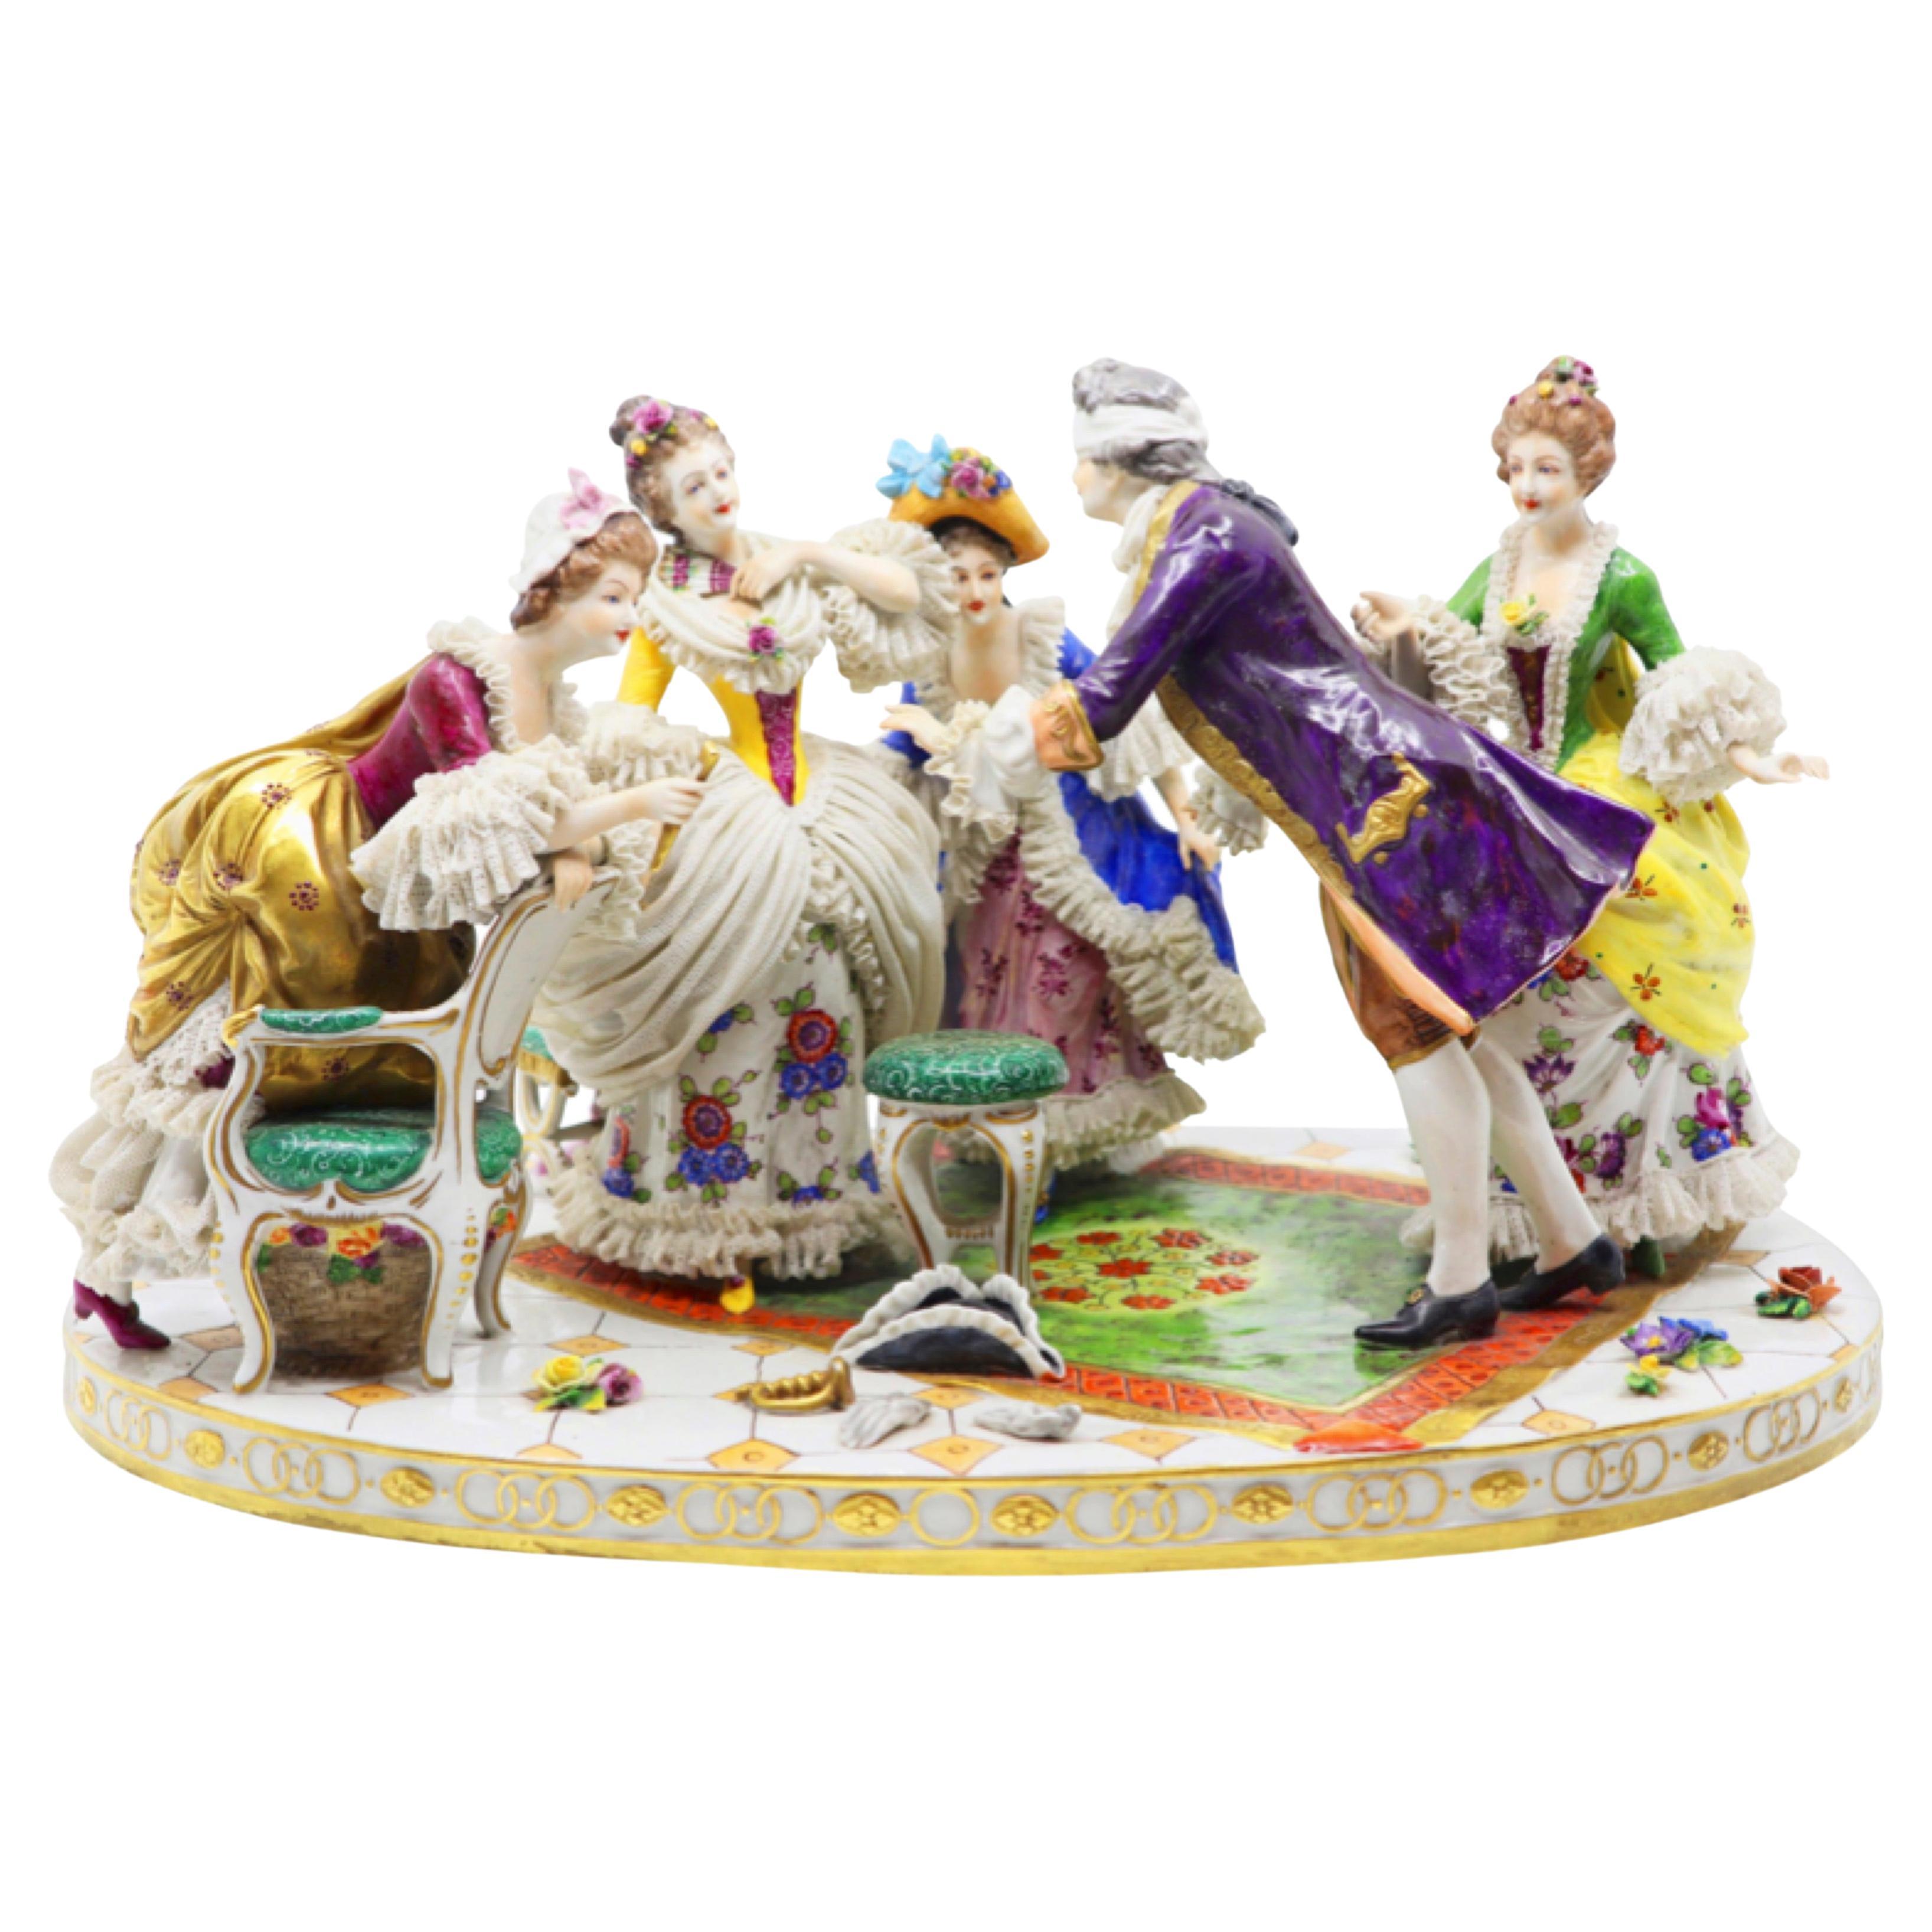 Groupe de figurines en porcelaine jouant du bonbon de l'aveugle 19ème siècle, français